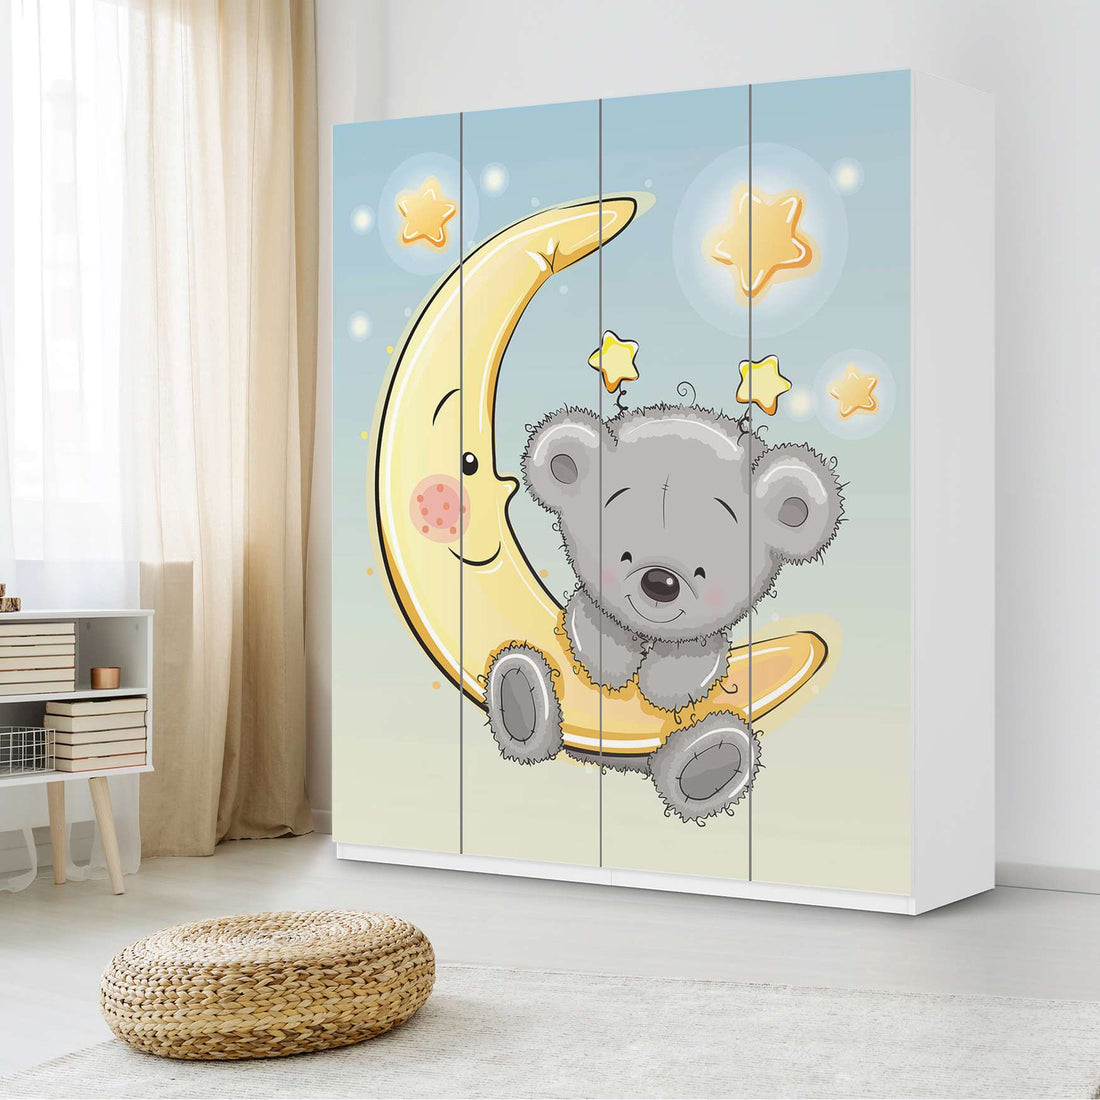 Möbelfolie Teddy und Mond - IKEA Pax Schrank 236 cm Höhe - 4 Türen - Kinderzimmer